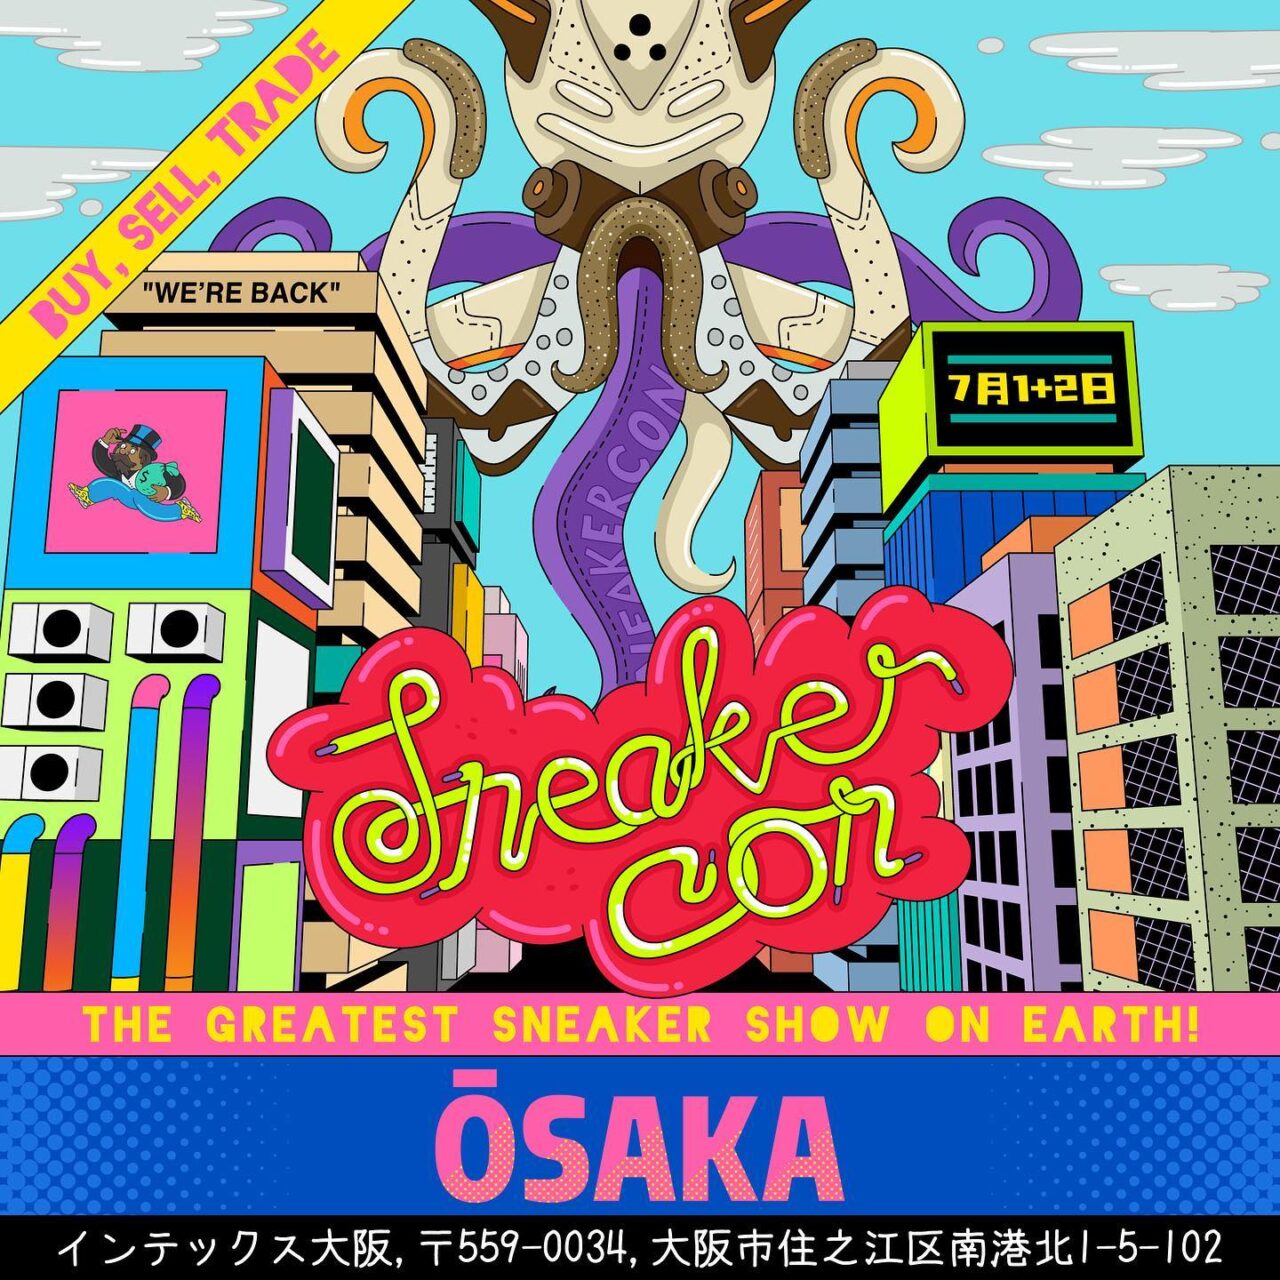 世界最大級のスニーカーの祭典「スニーカーコン大阪 2023」が、7/1~7/2 から開催 (Sneaker Con Osaka)